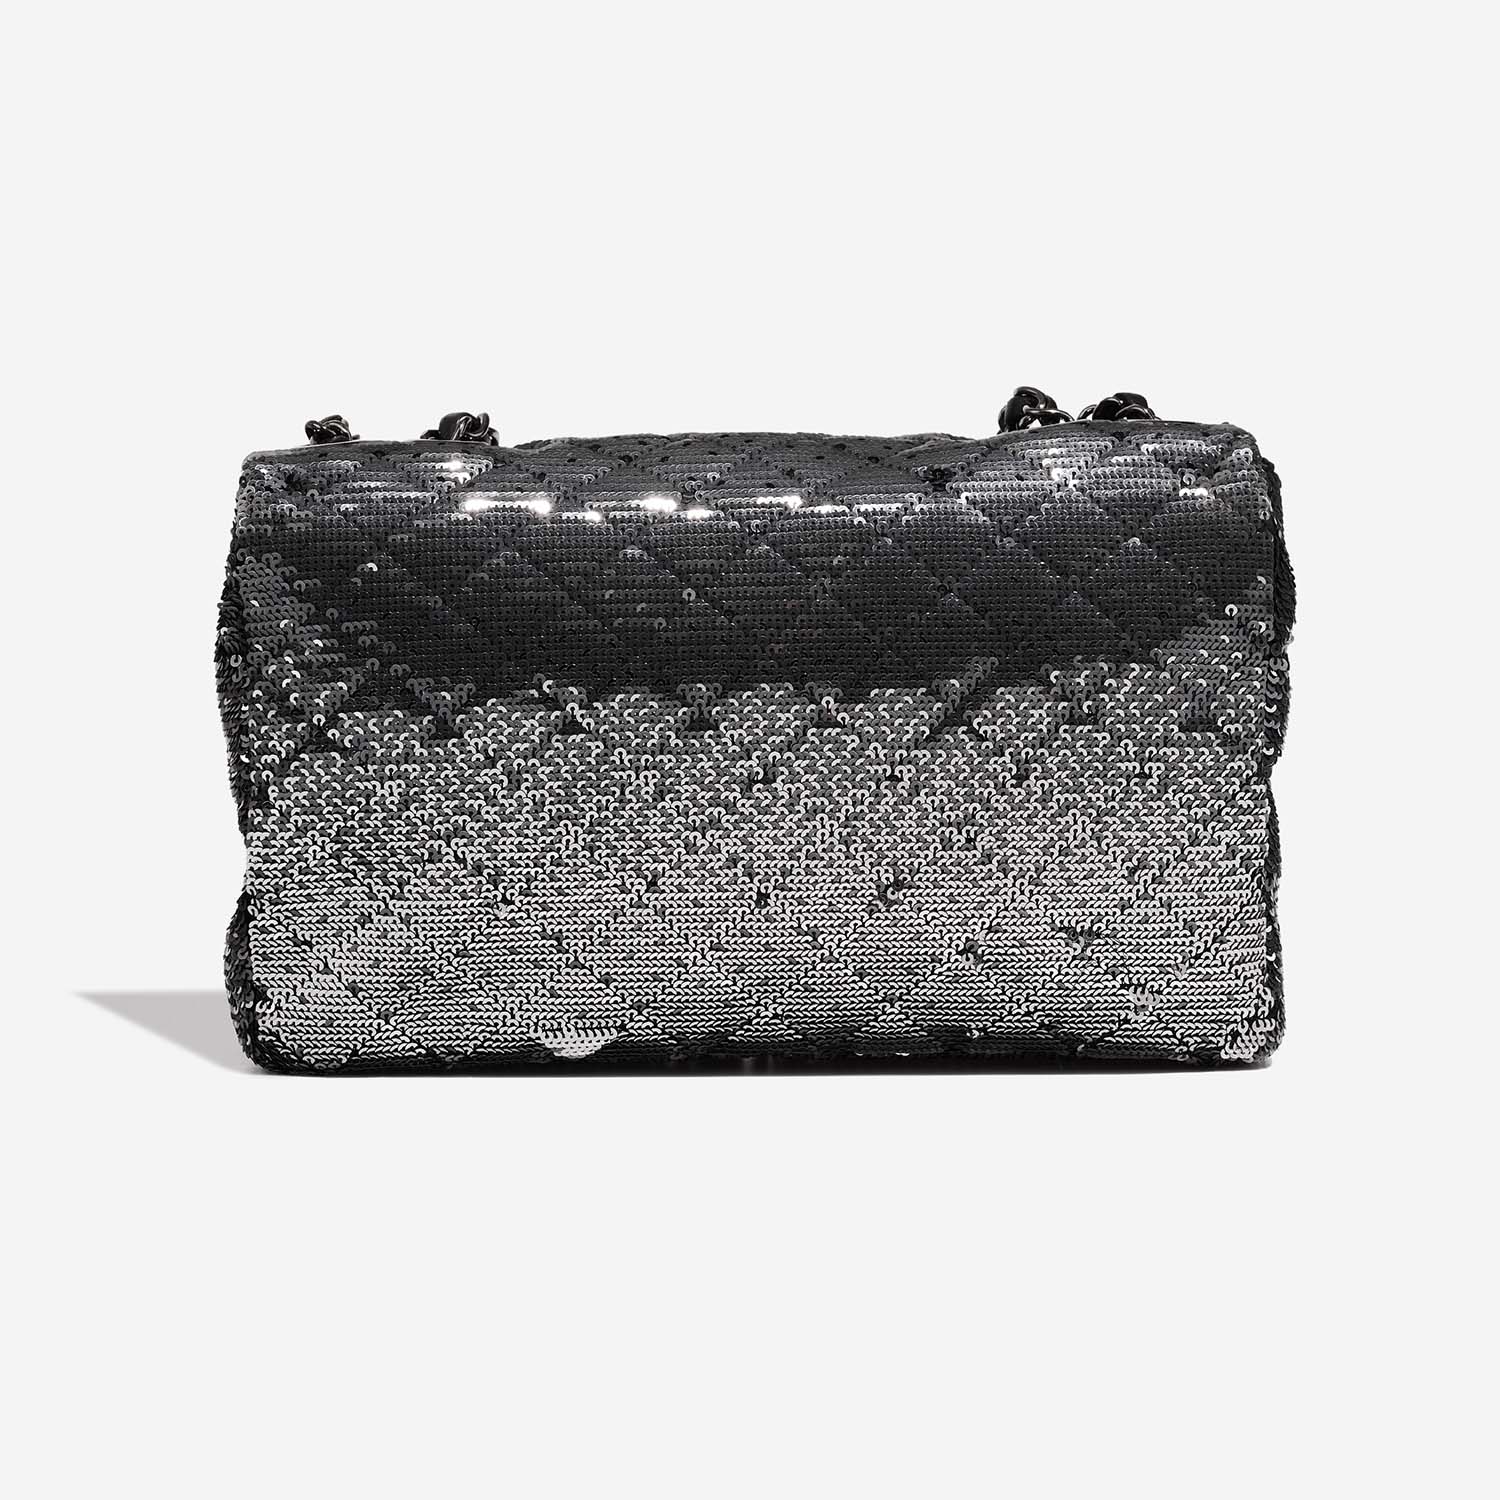 Chanel Timeless Medium Black-Silver Back | Verkaufen Sie Ihre Designer-Tasche auf Saclab.com